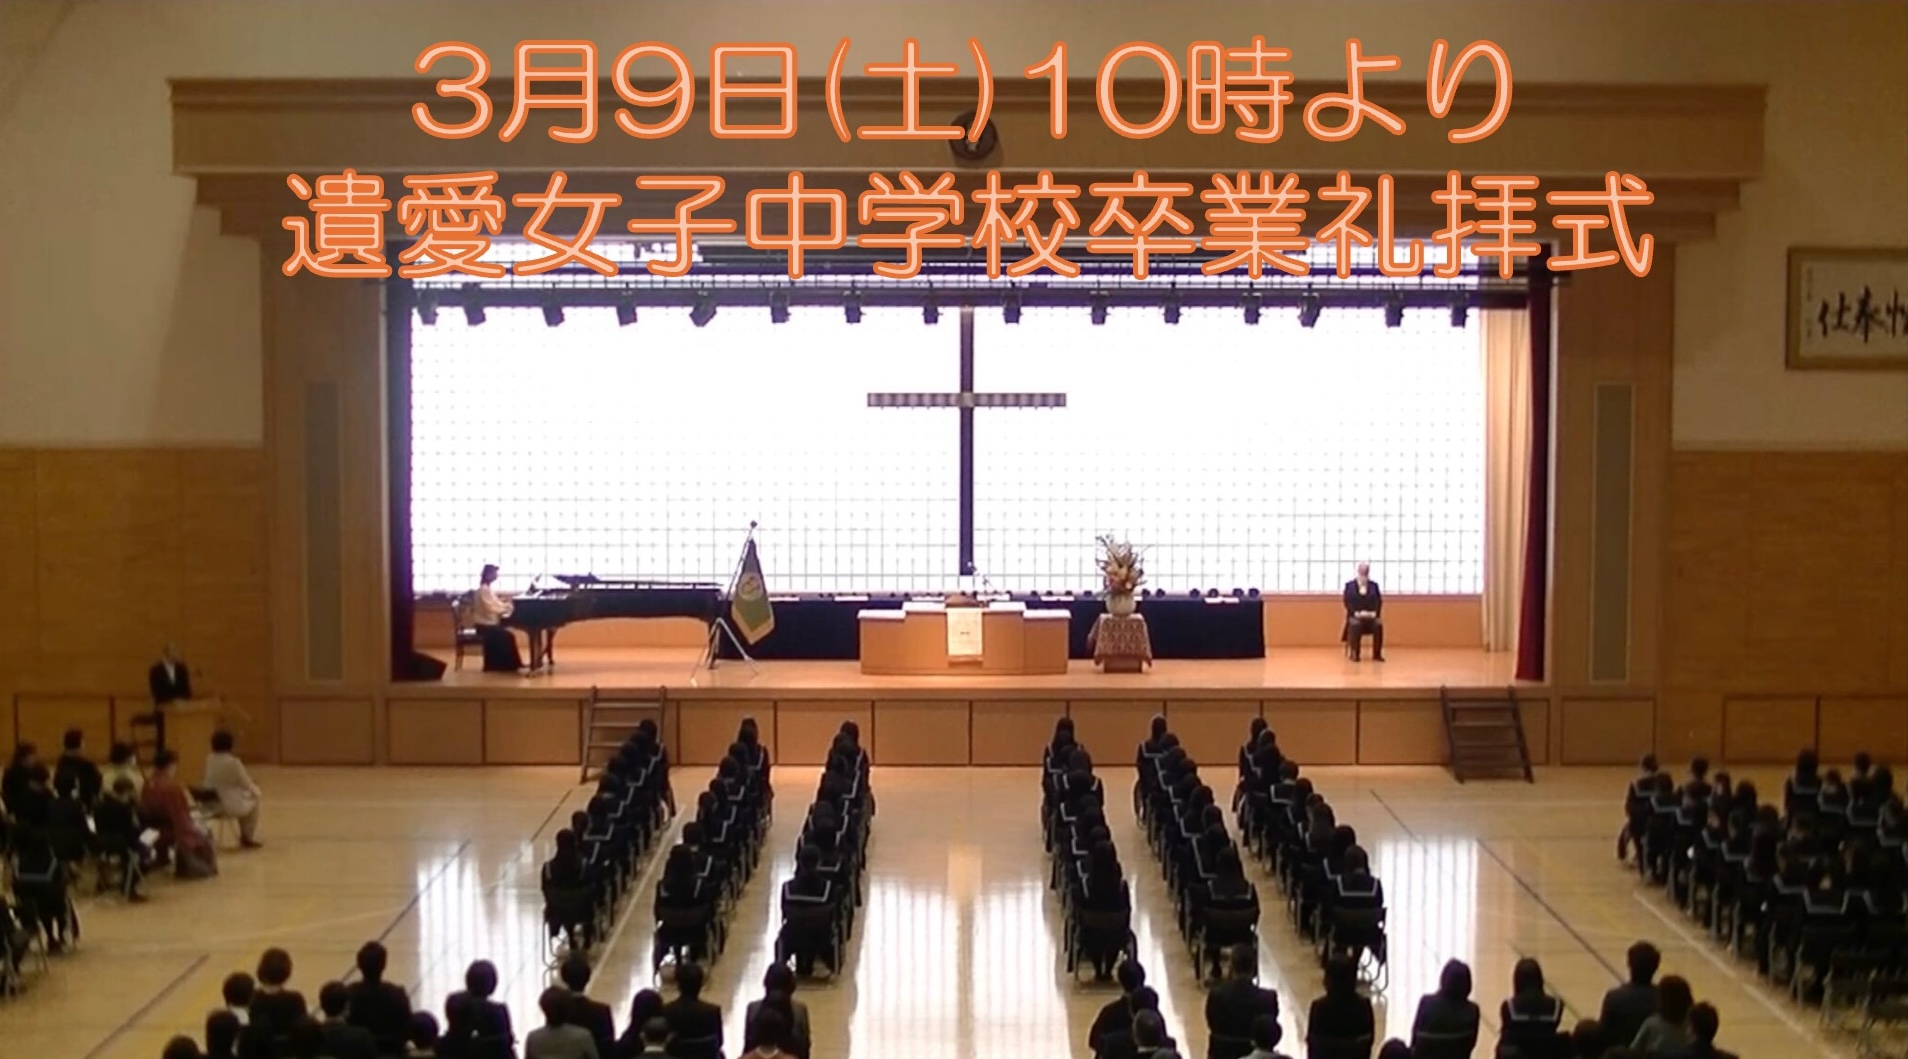 3月9日(土) 遺愛女子中学校『第77回 卒業礼拝式』が10時より執り行われます。